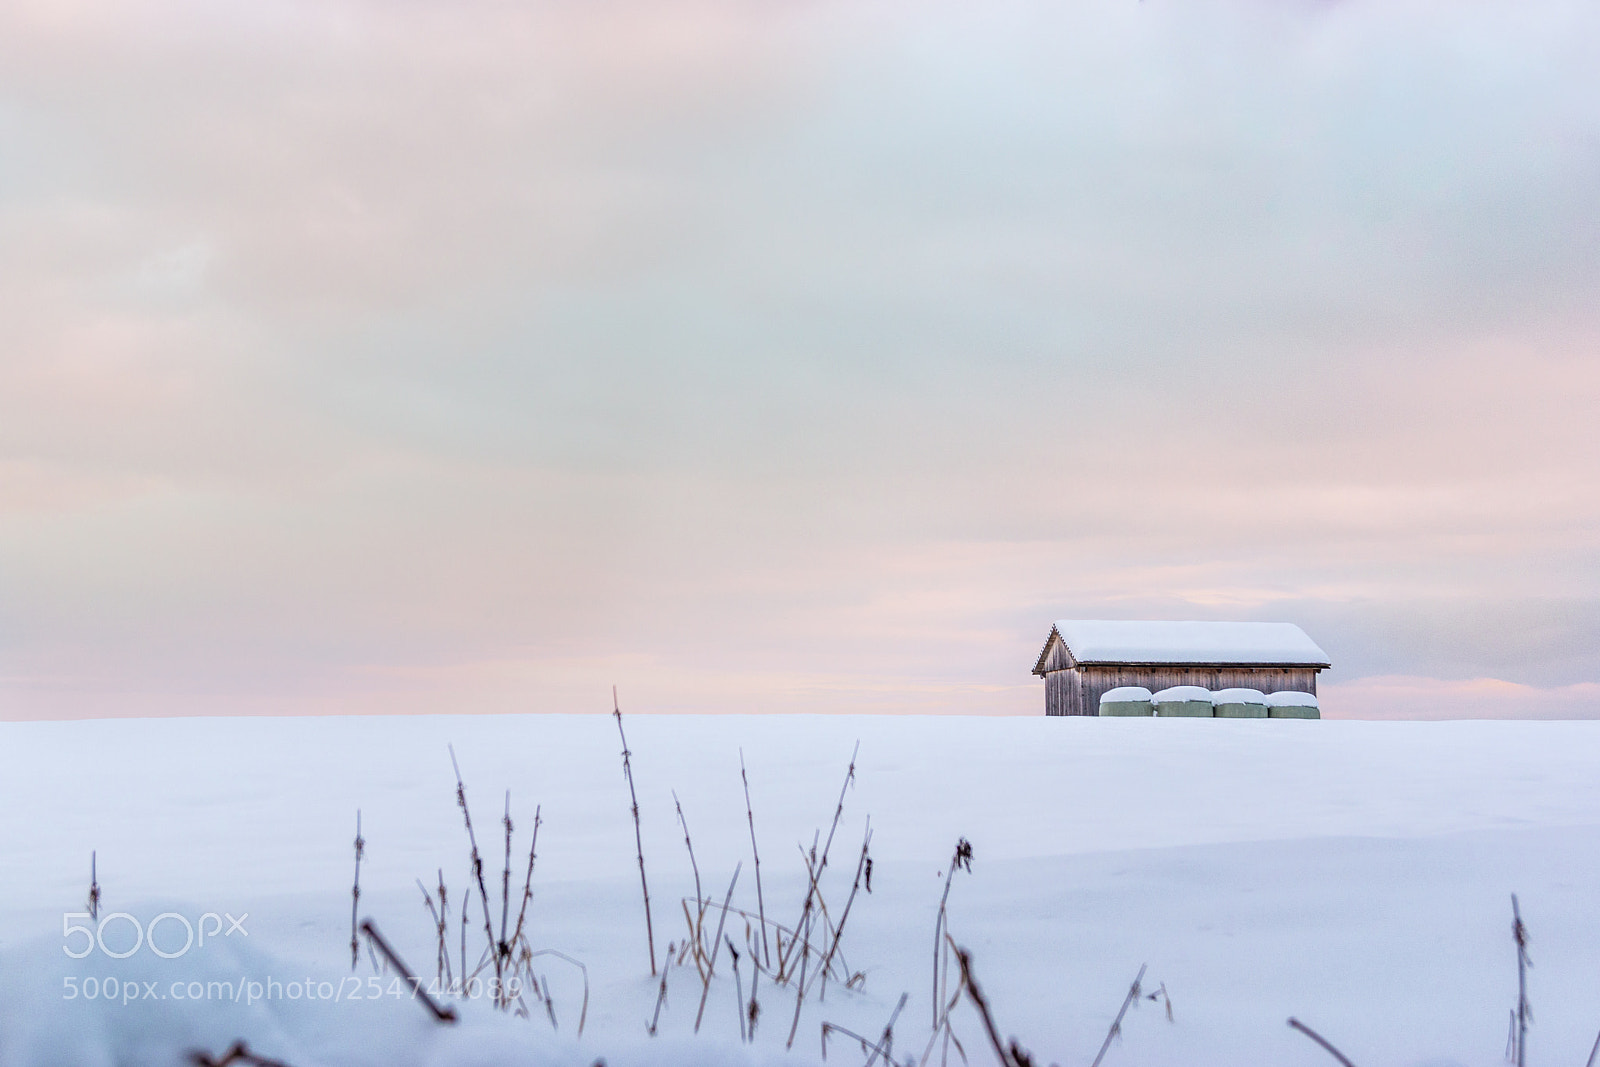 Sony SLT-A65 (SLT-A65V) sample photo. Winter landscape photography